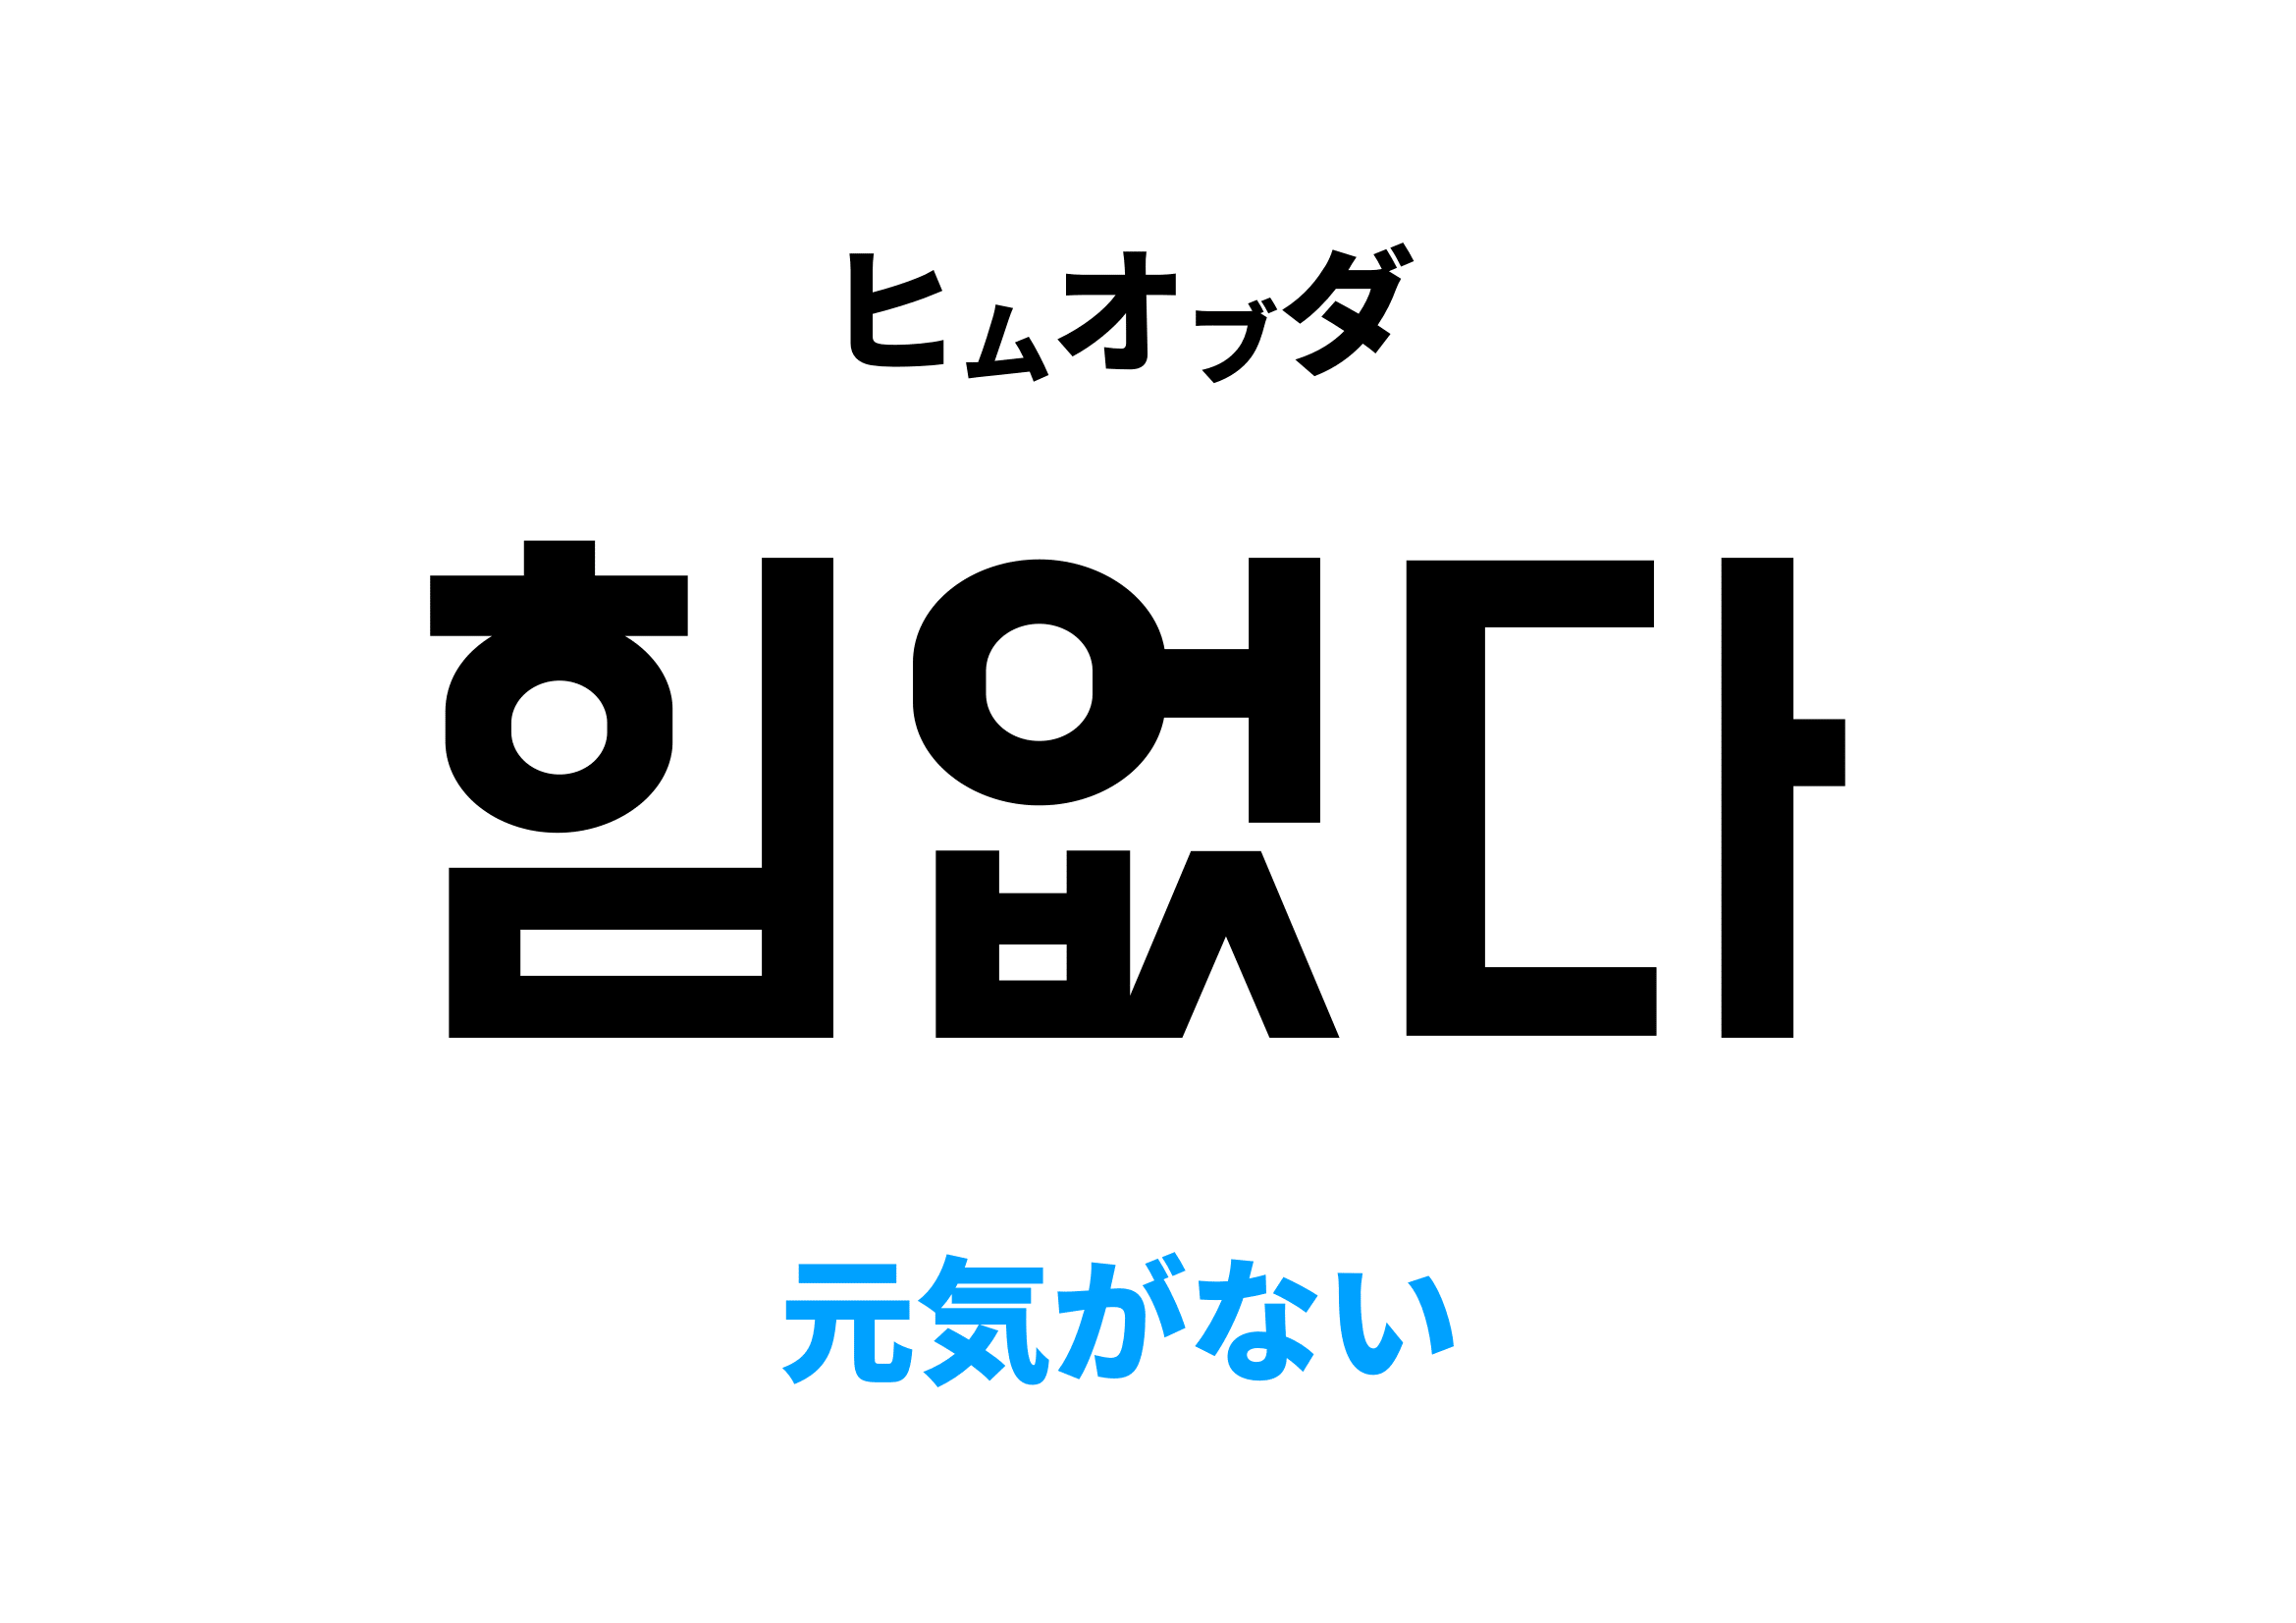 韓国語で元気がない,힘없다の意味